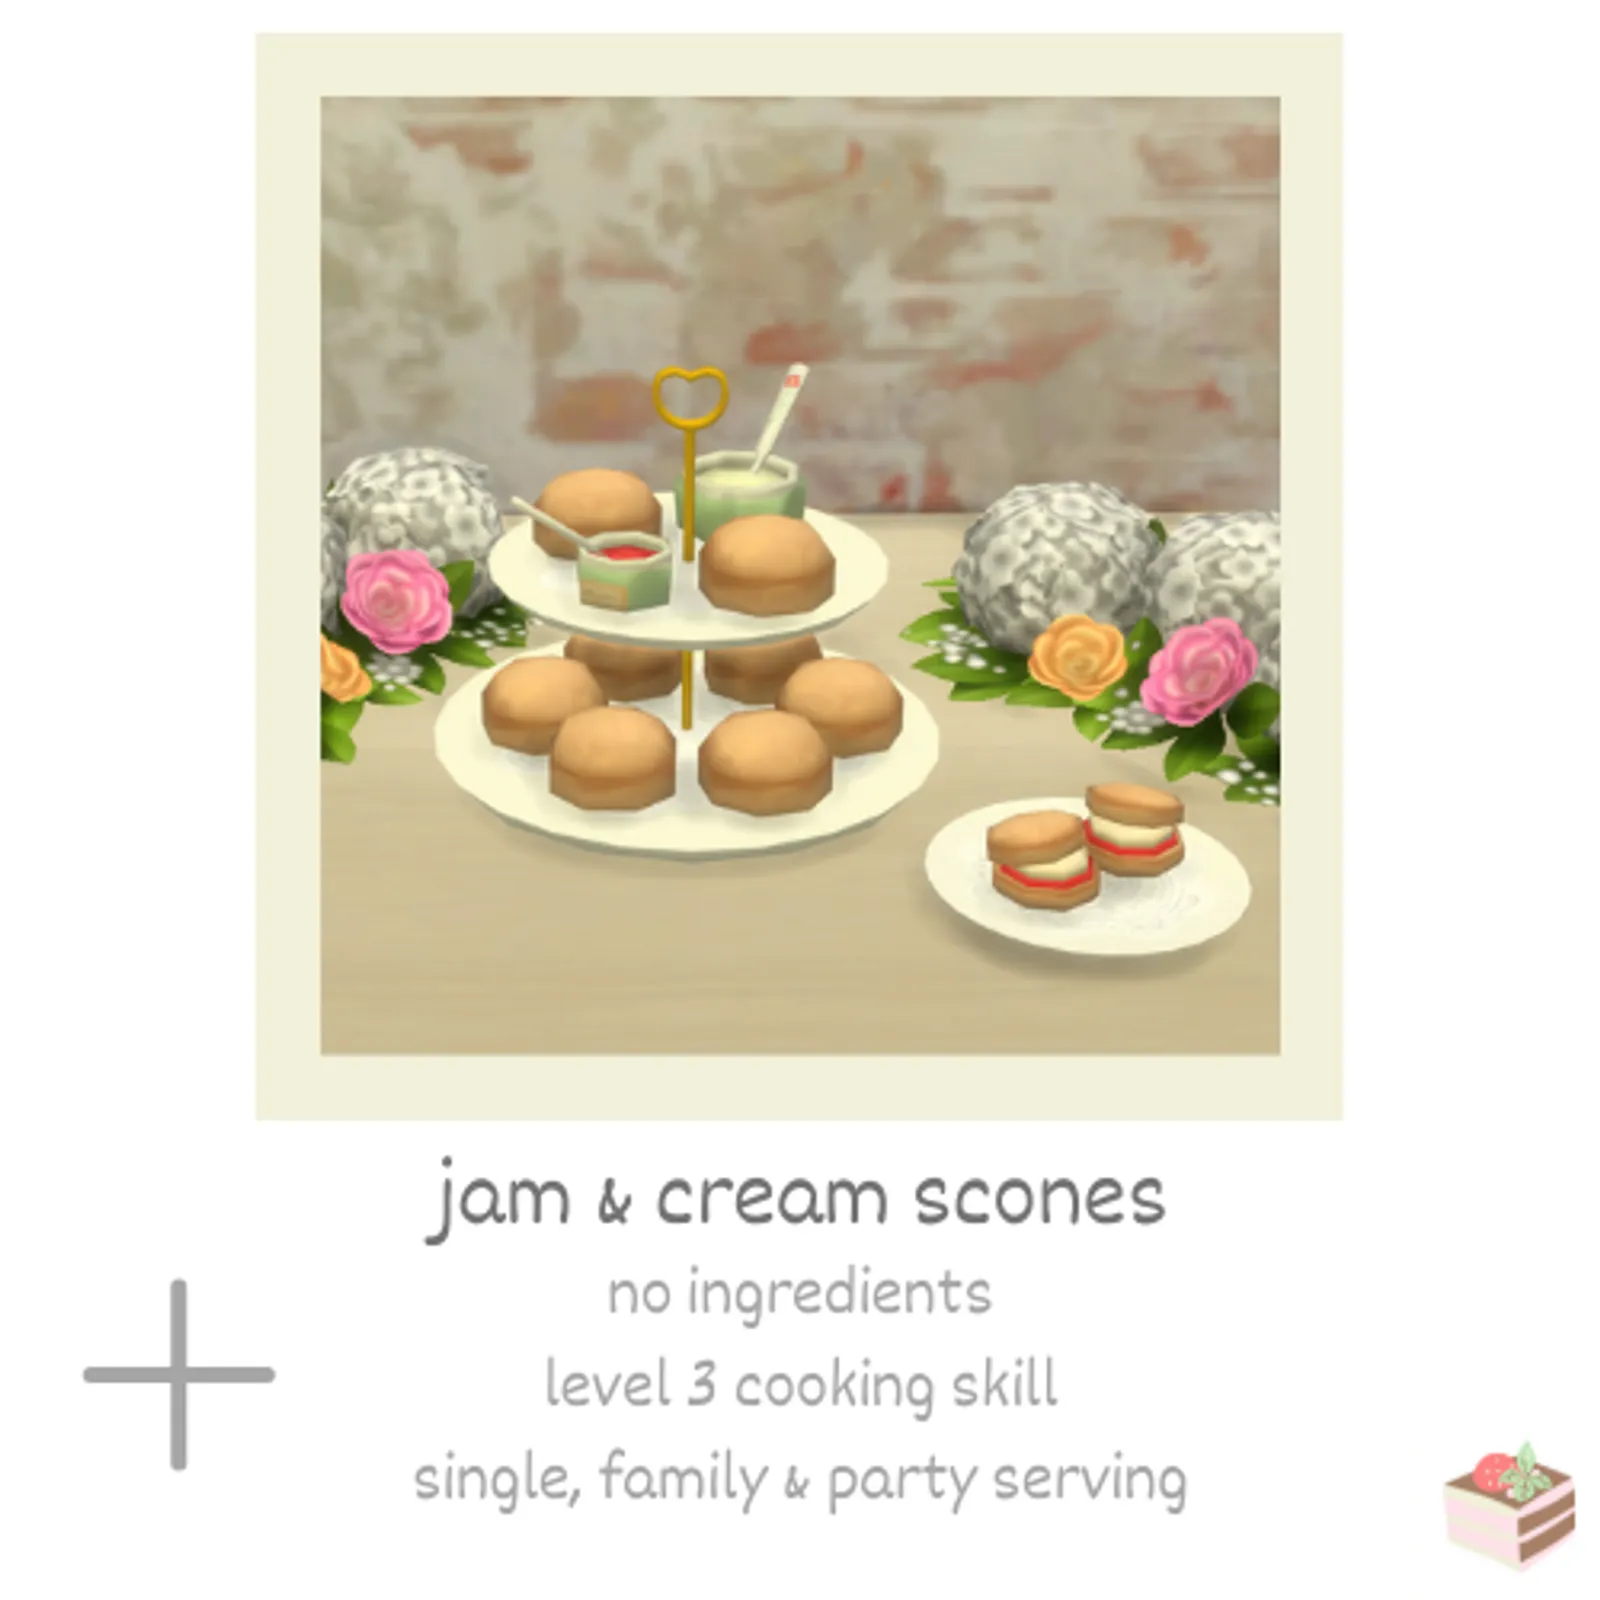 jam & cream scones